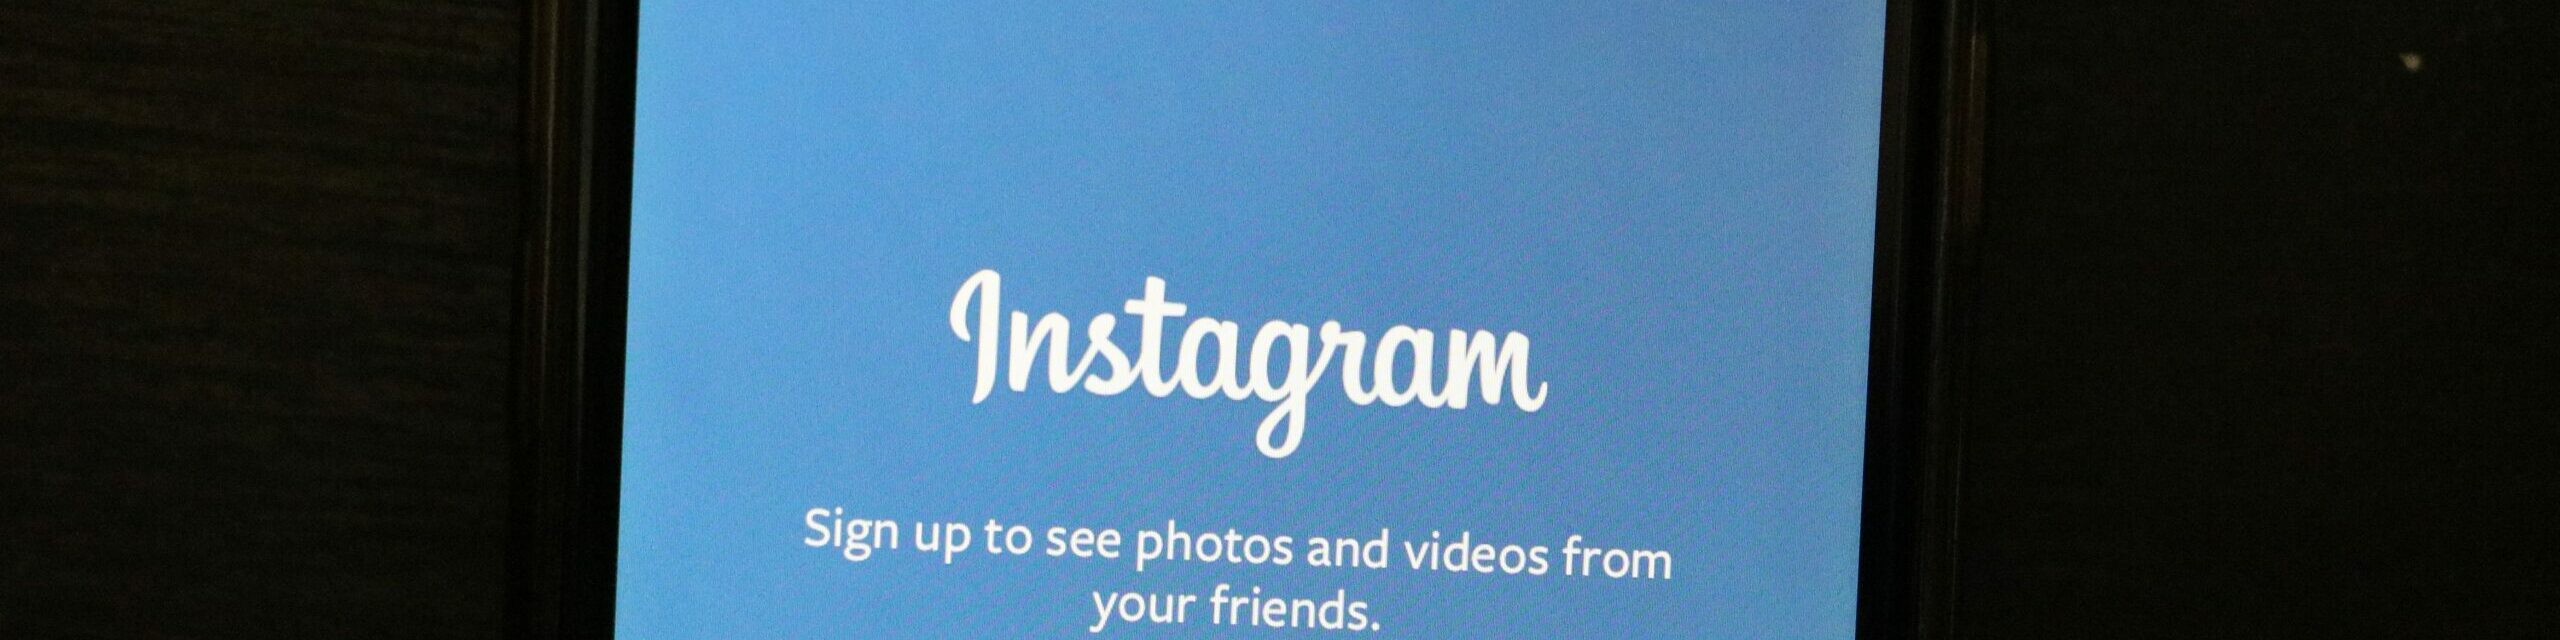 Erreurs à éviter pour attirer plus d'abonnés sur Instagram Maxi followers